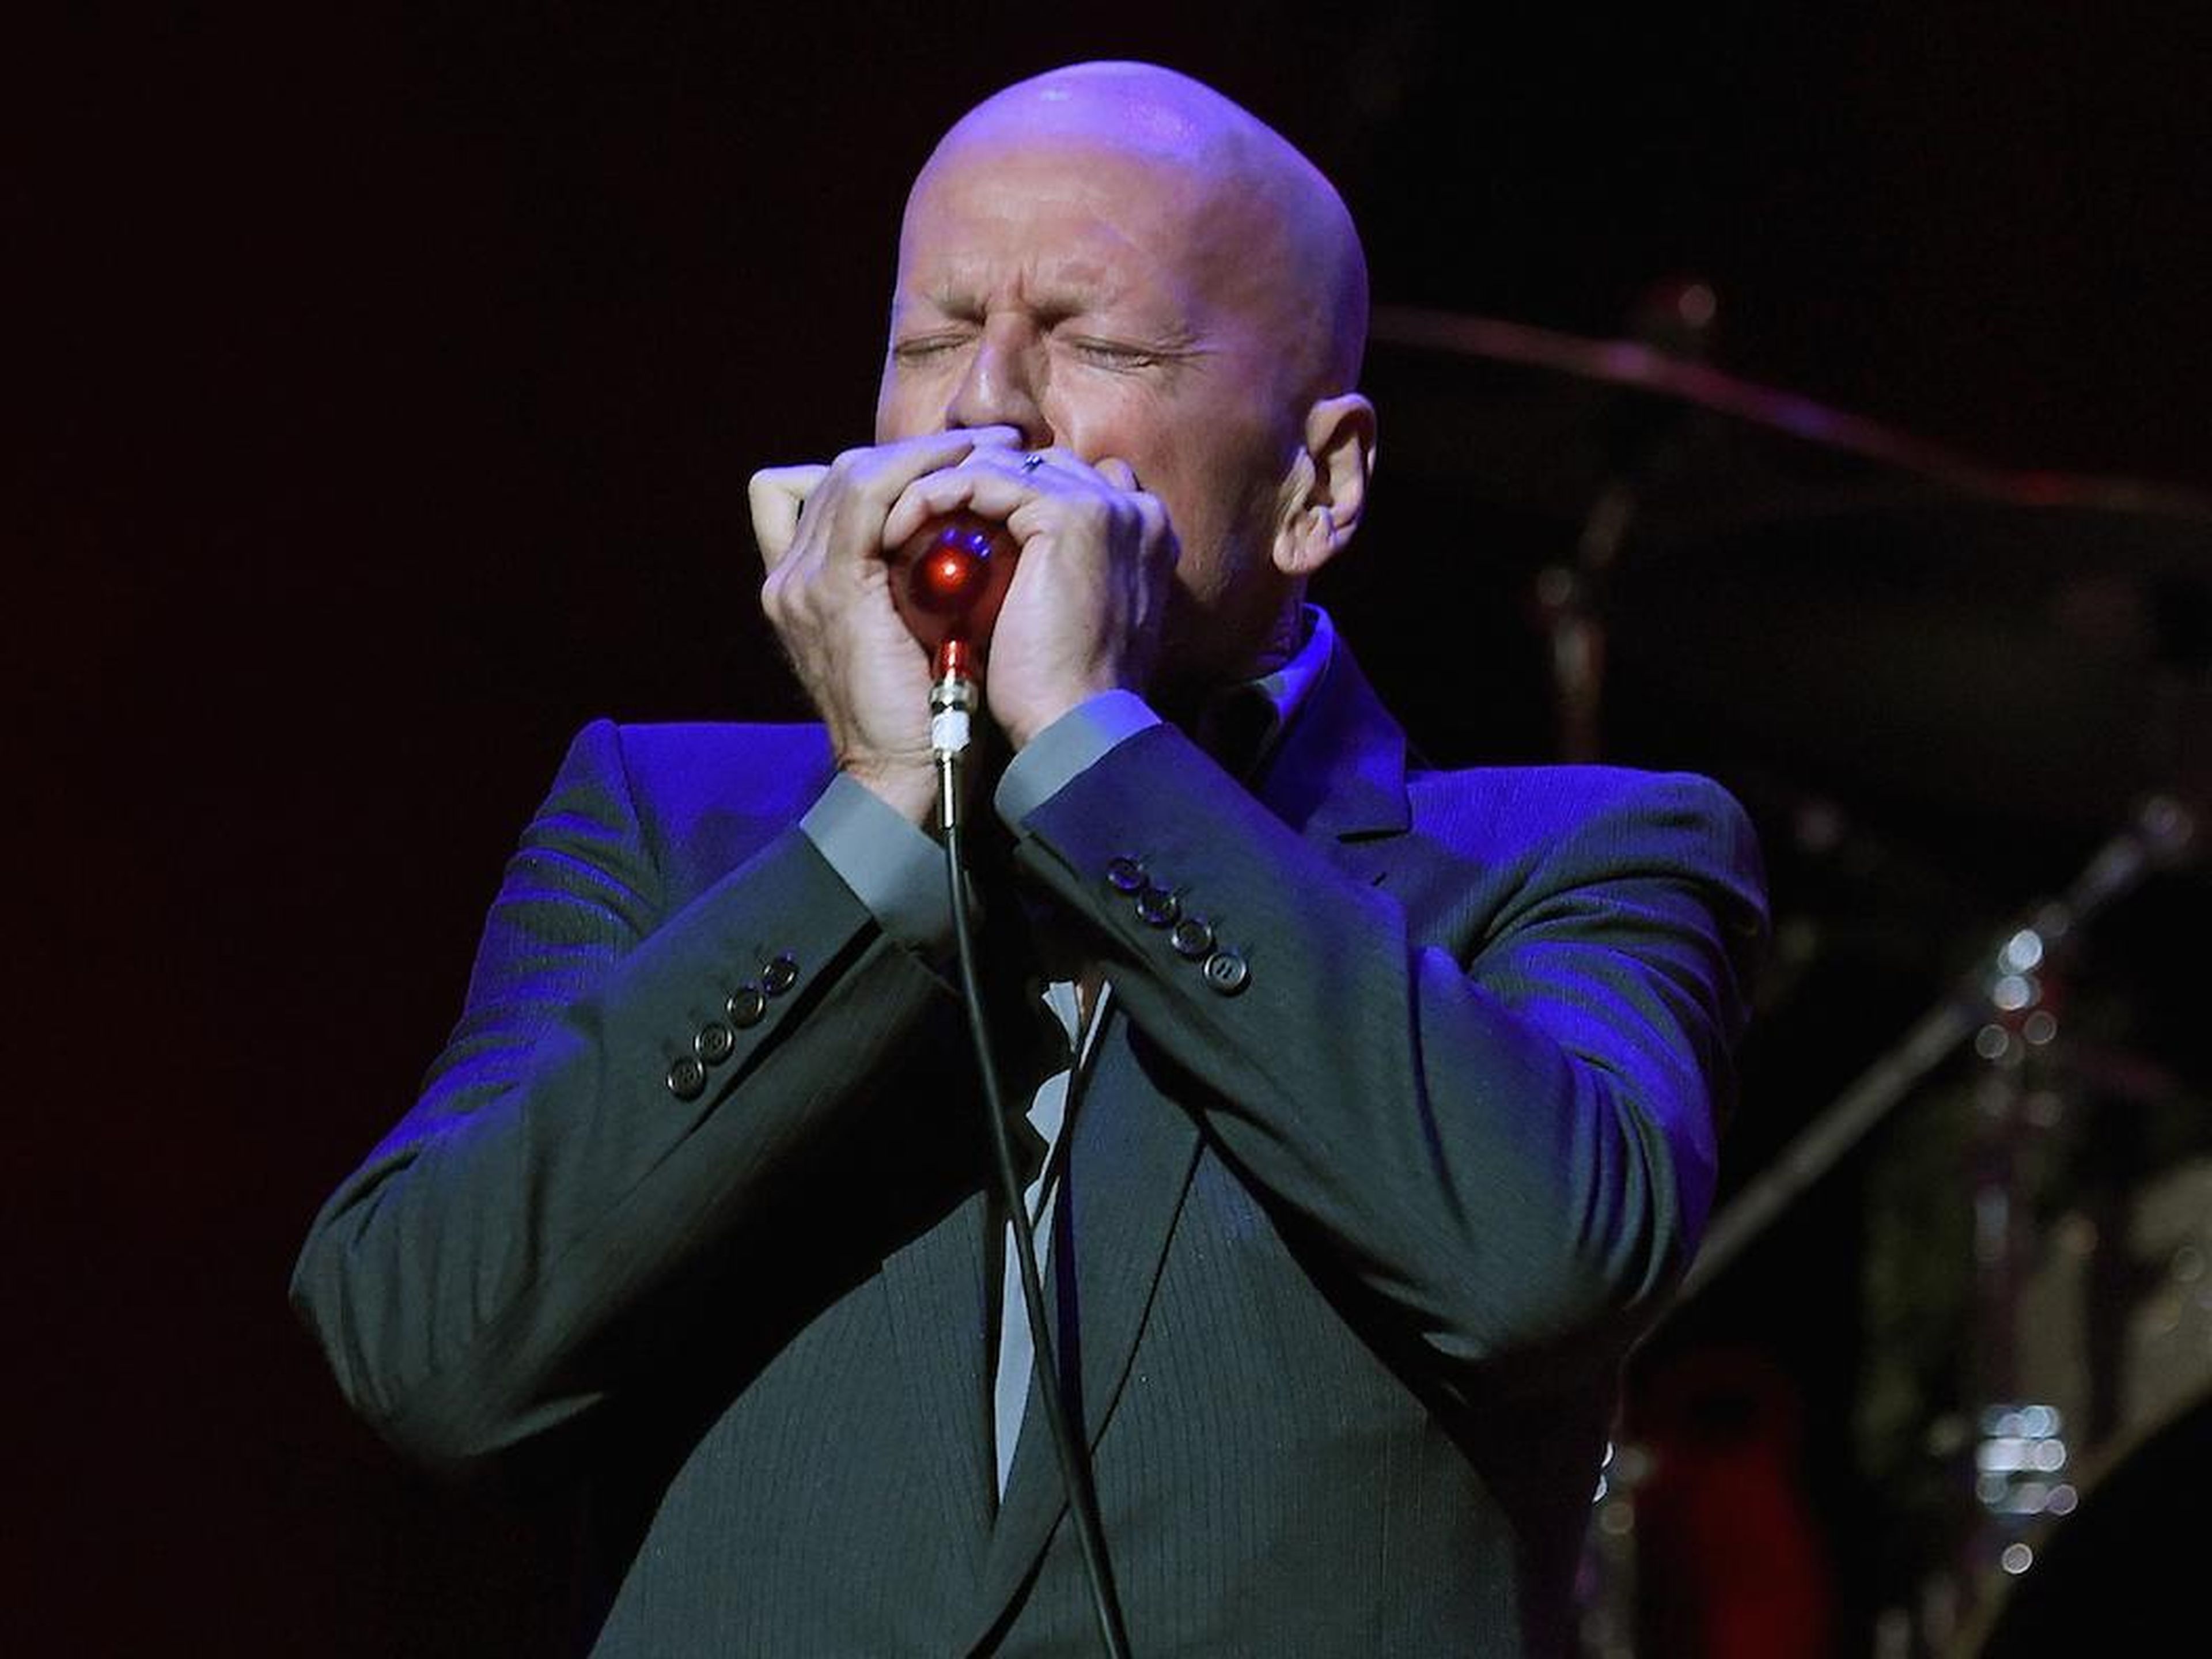 Bruce Willis tocó una armónica durante un concierto benéfico en 2017.ring a 2017 benefit concert.